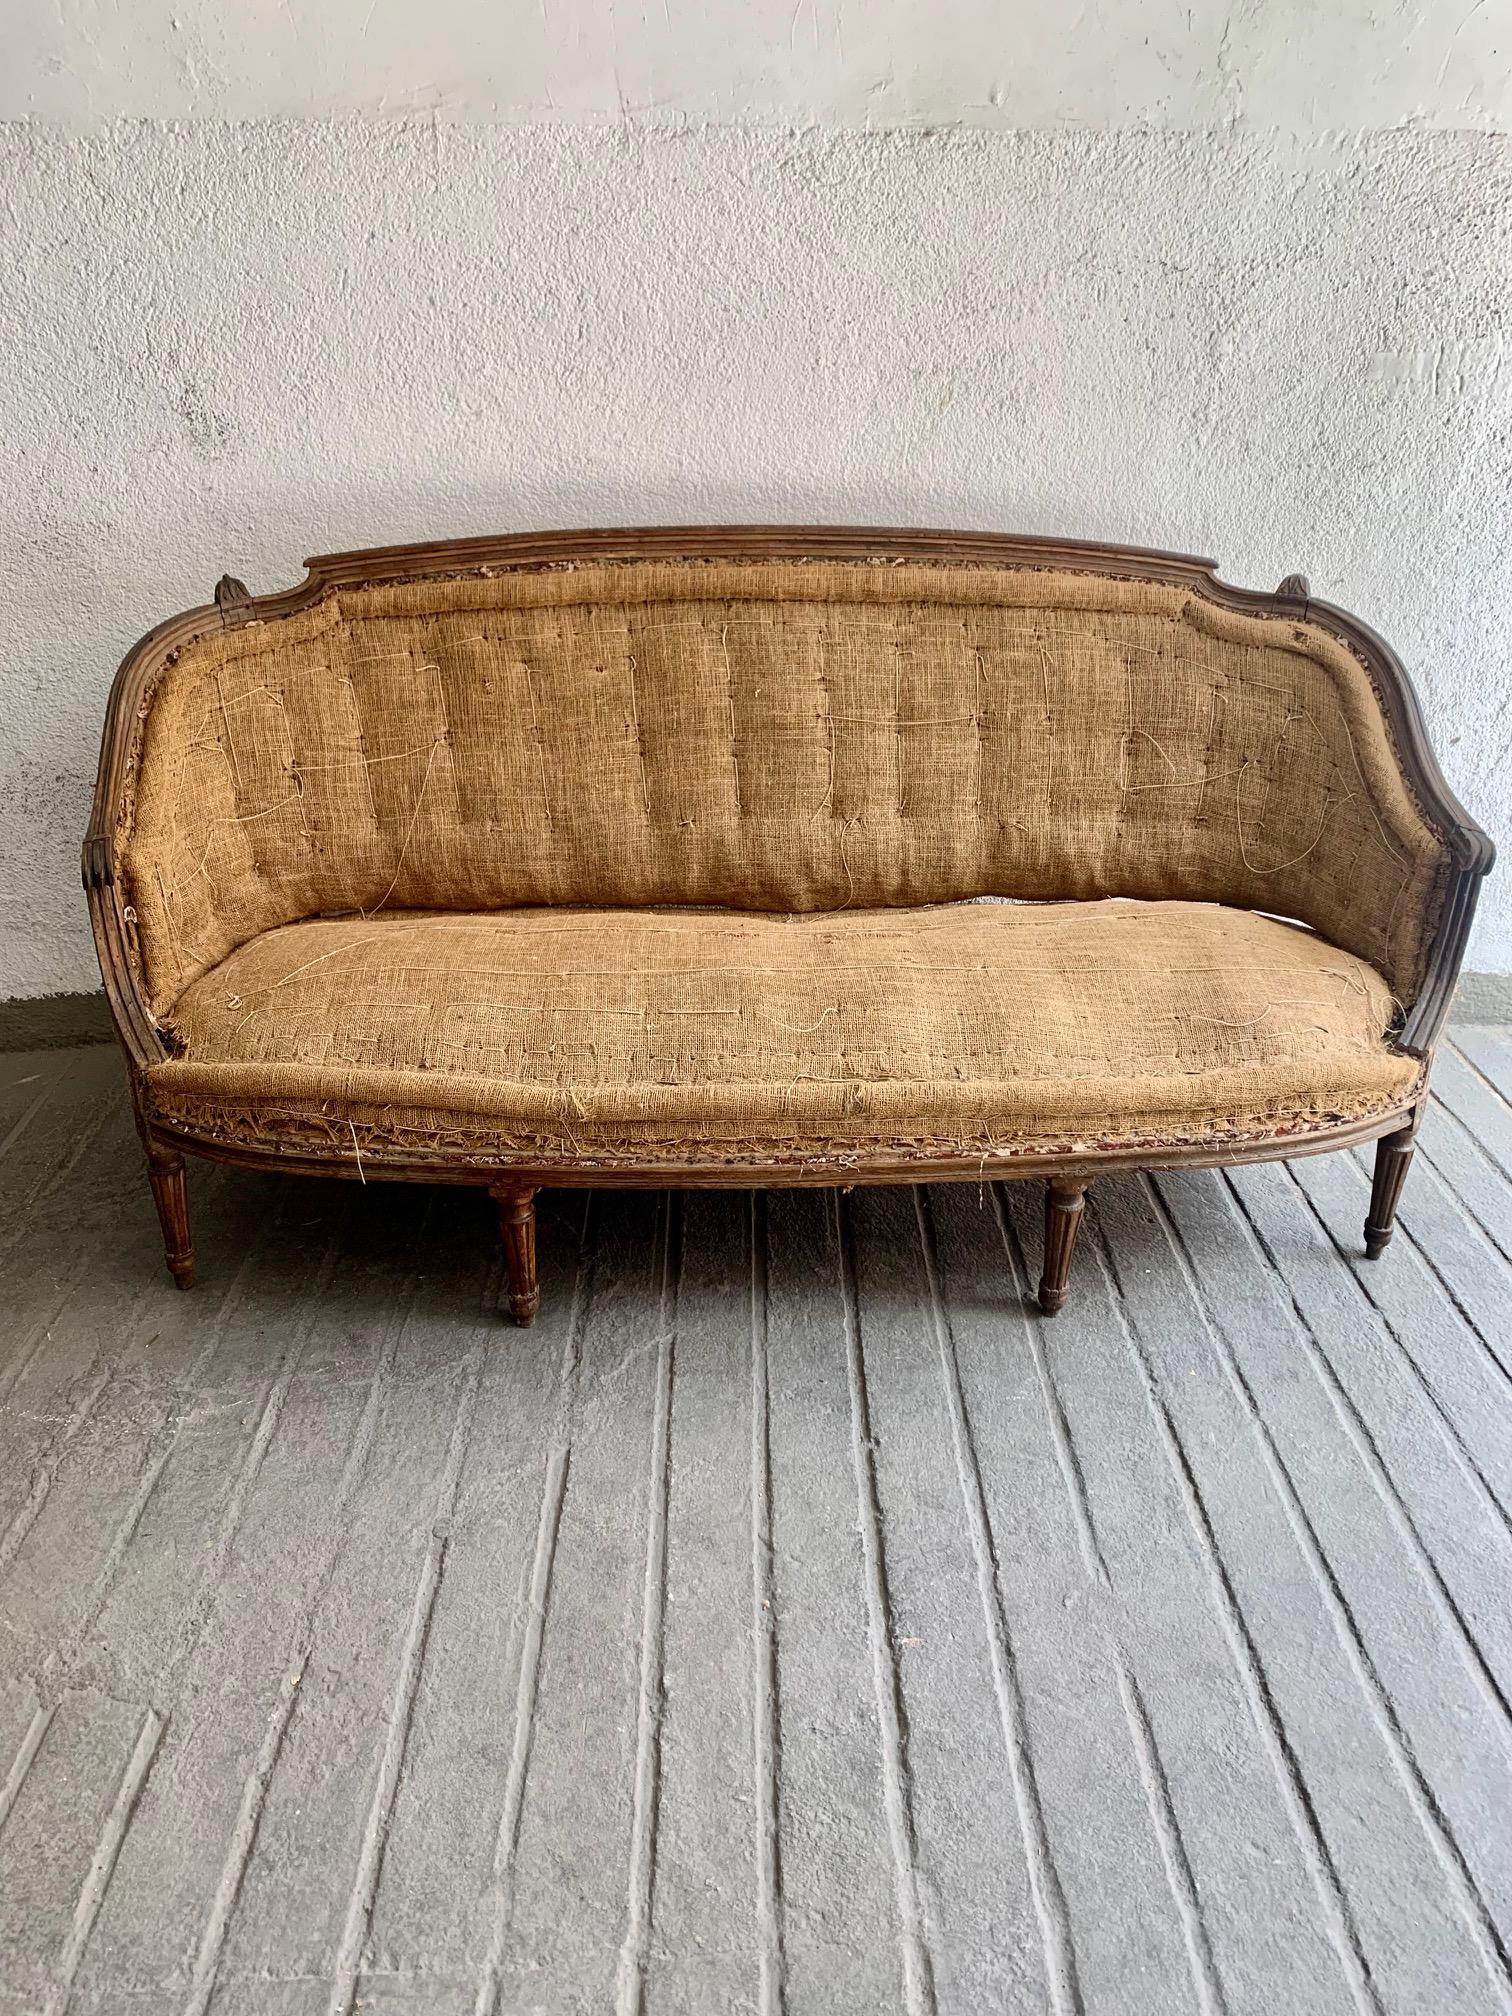 Ein Louis XVI-Sofa aus geschnitzter Nussbaum-Corbeille aus dem späten 18. Jahrhundert, mit einer leicht umhüllenden Rückenlehne, die für diese Zeit charakteristisch ist, gekrönt von einigen floralen Zacken. Dieses im letzten Viertel des 18.